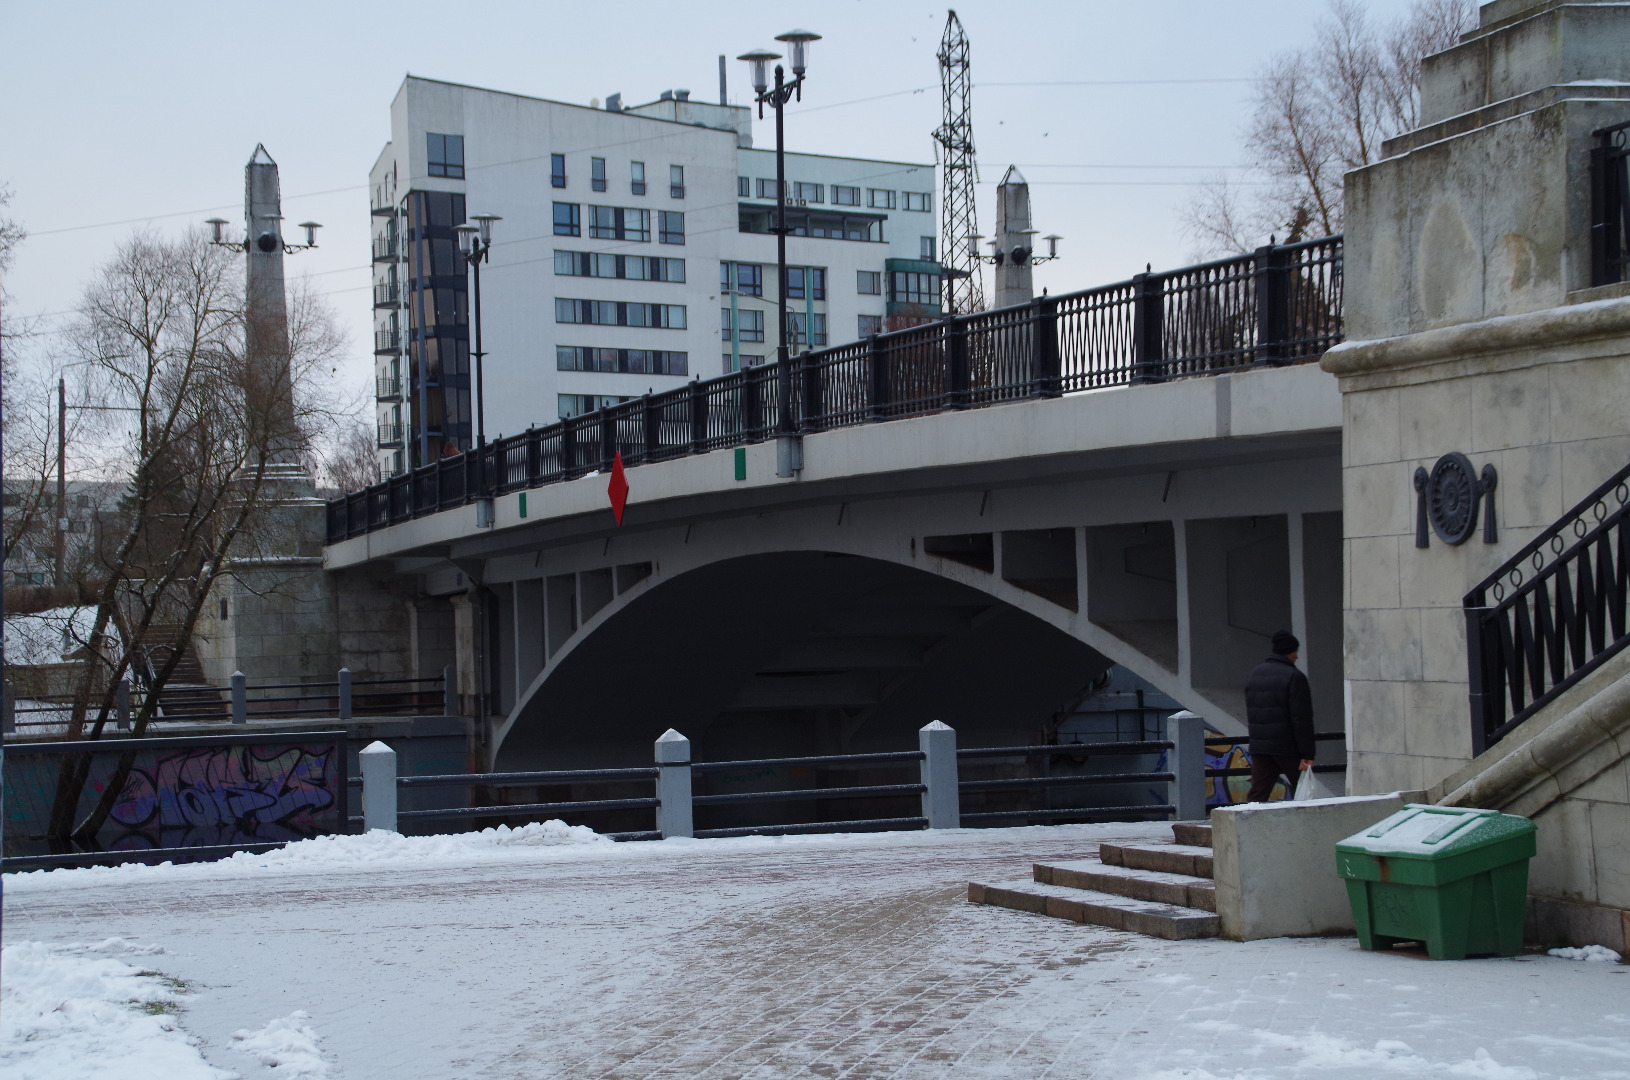 Winning bridge. Tartu, 1964. rephoto